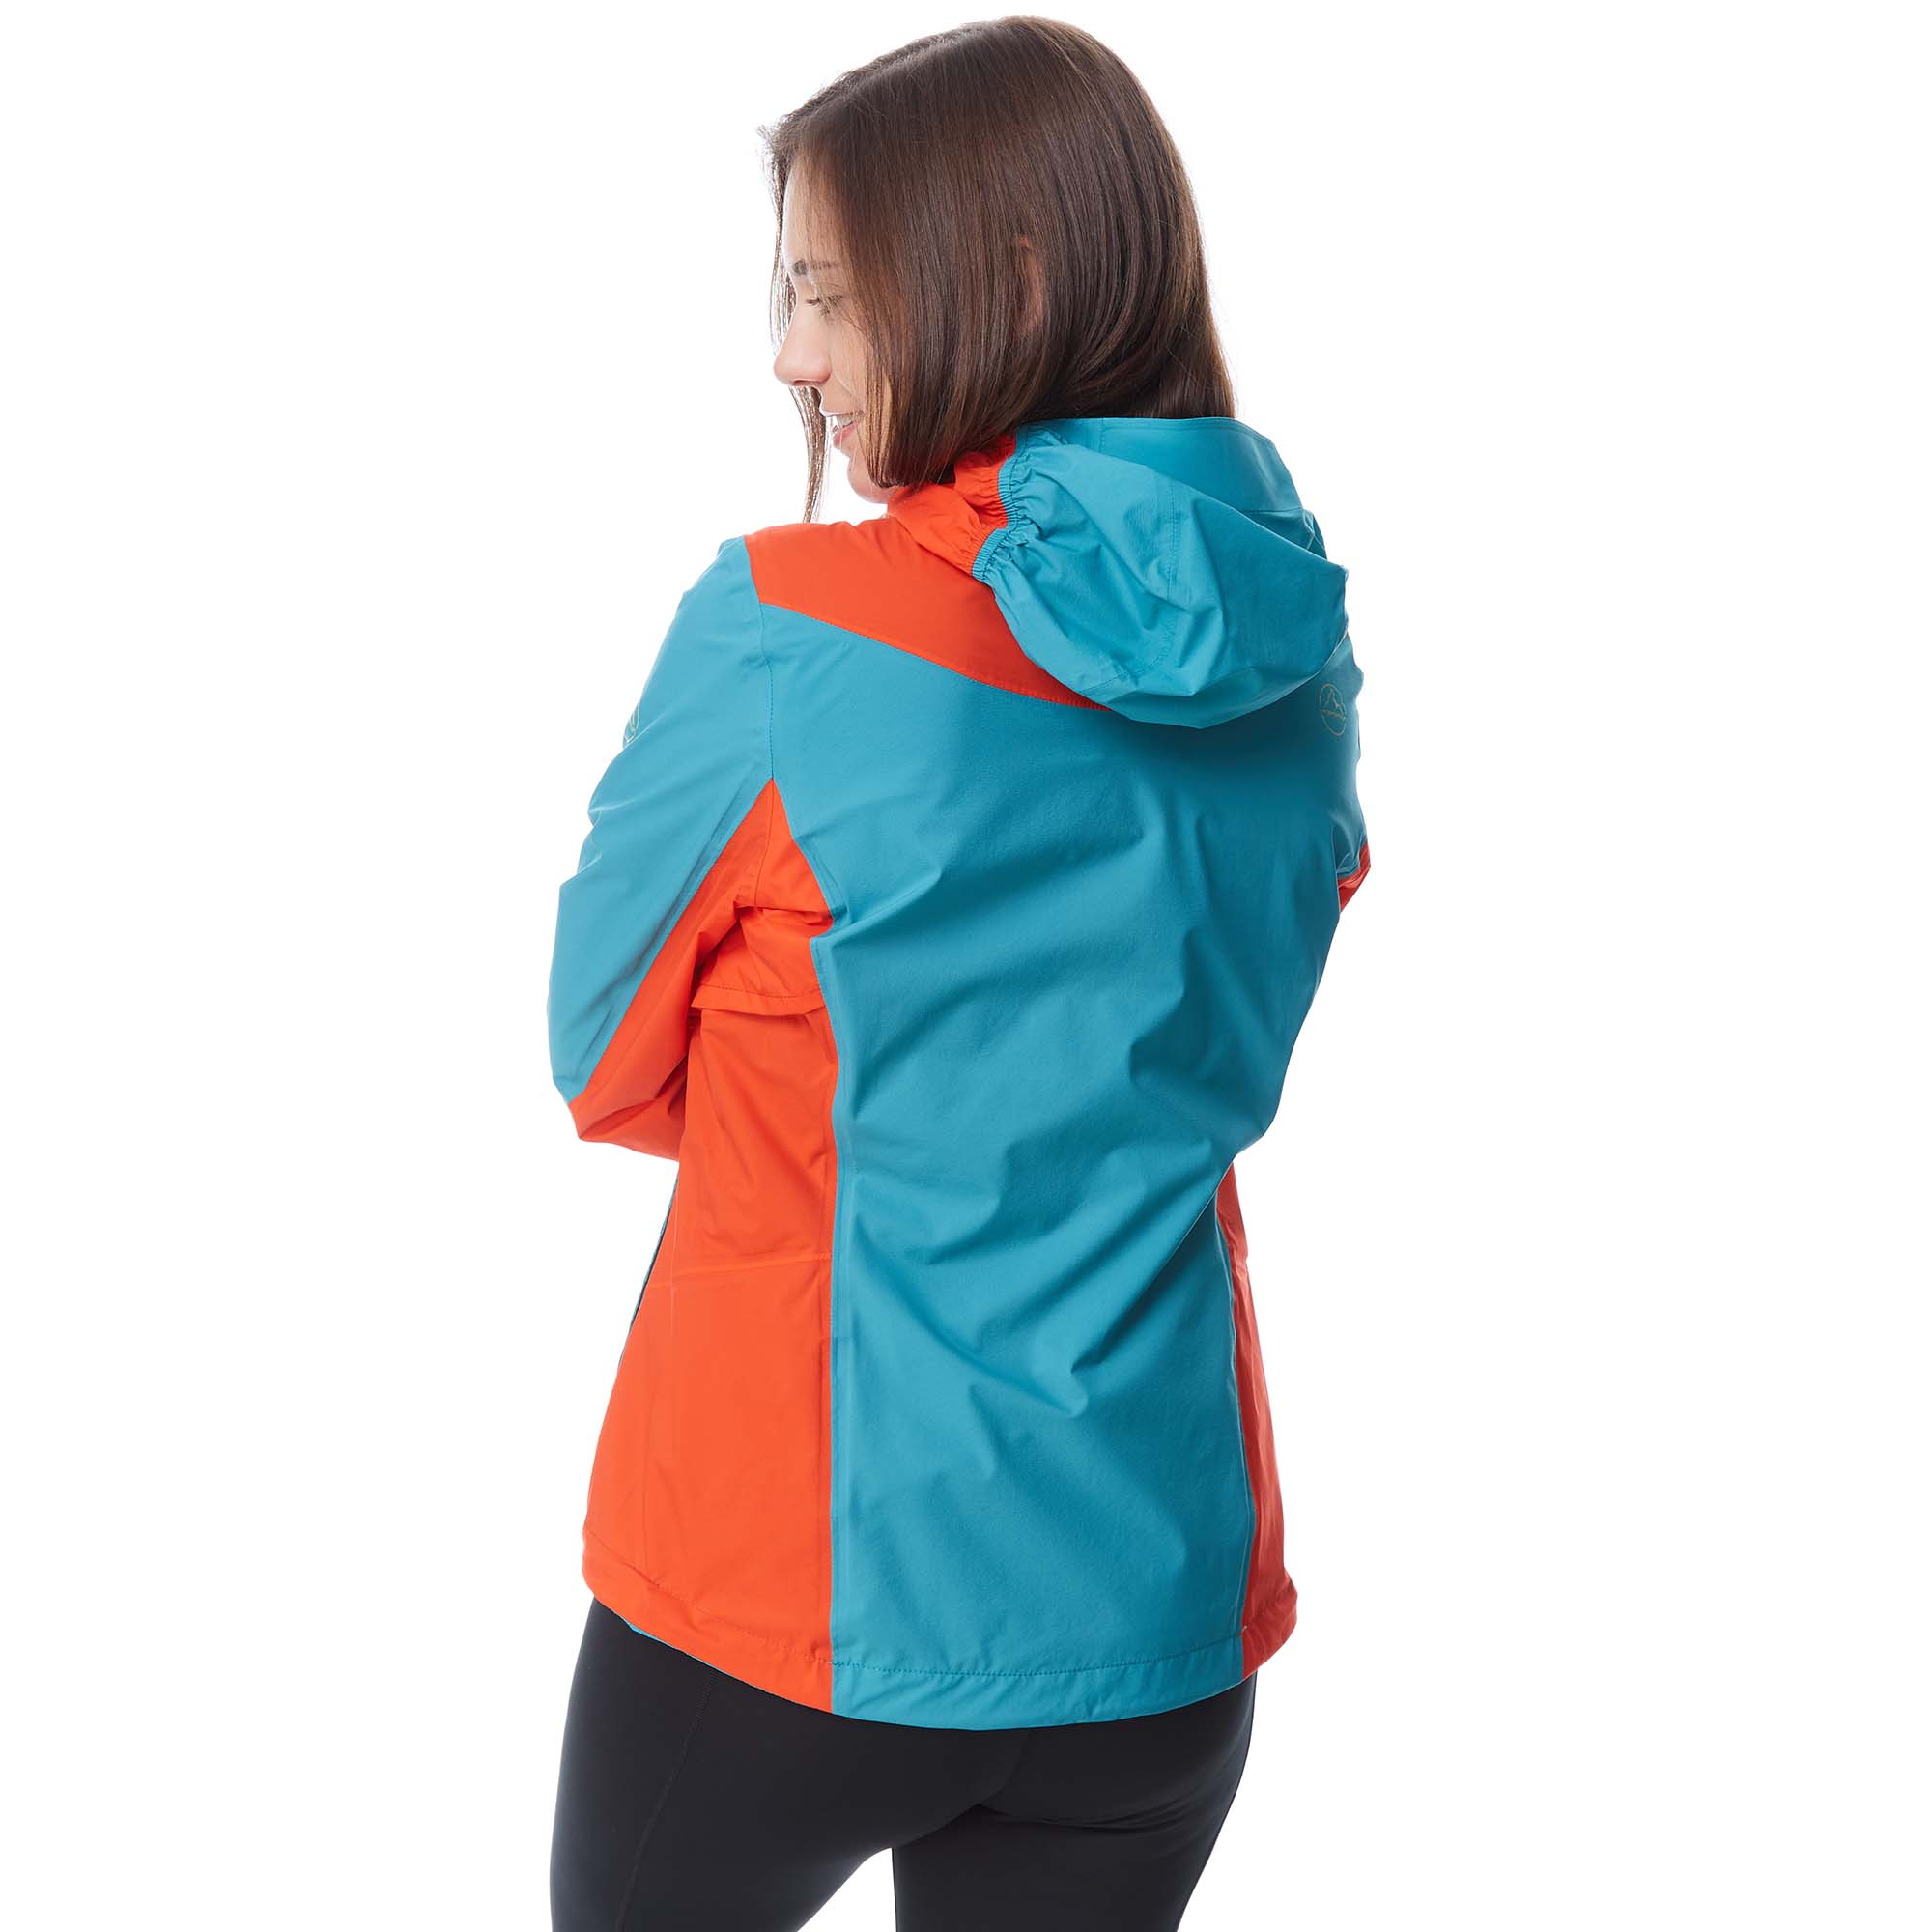 La Sportiva Discover Women's Hooded Jacket